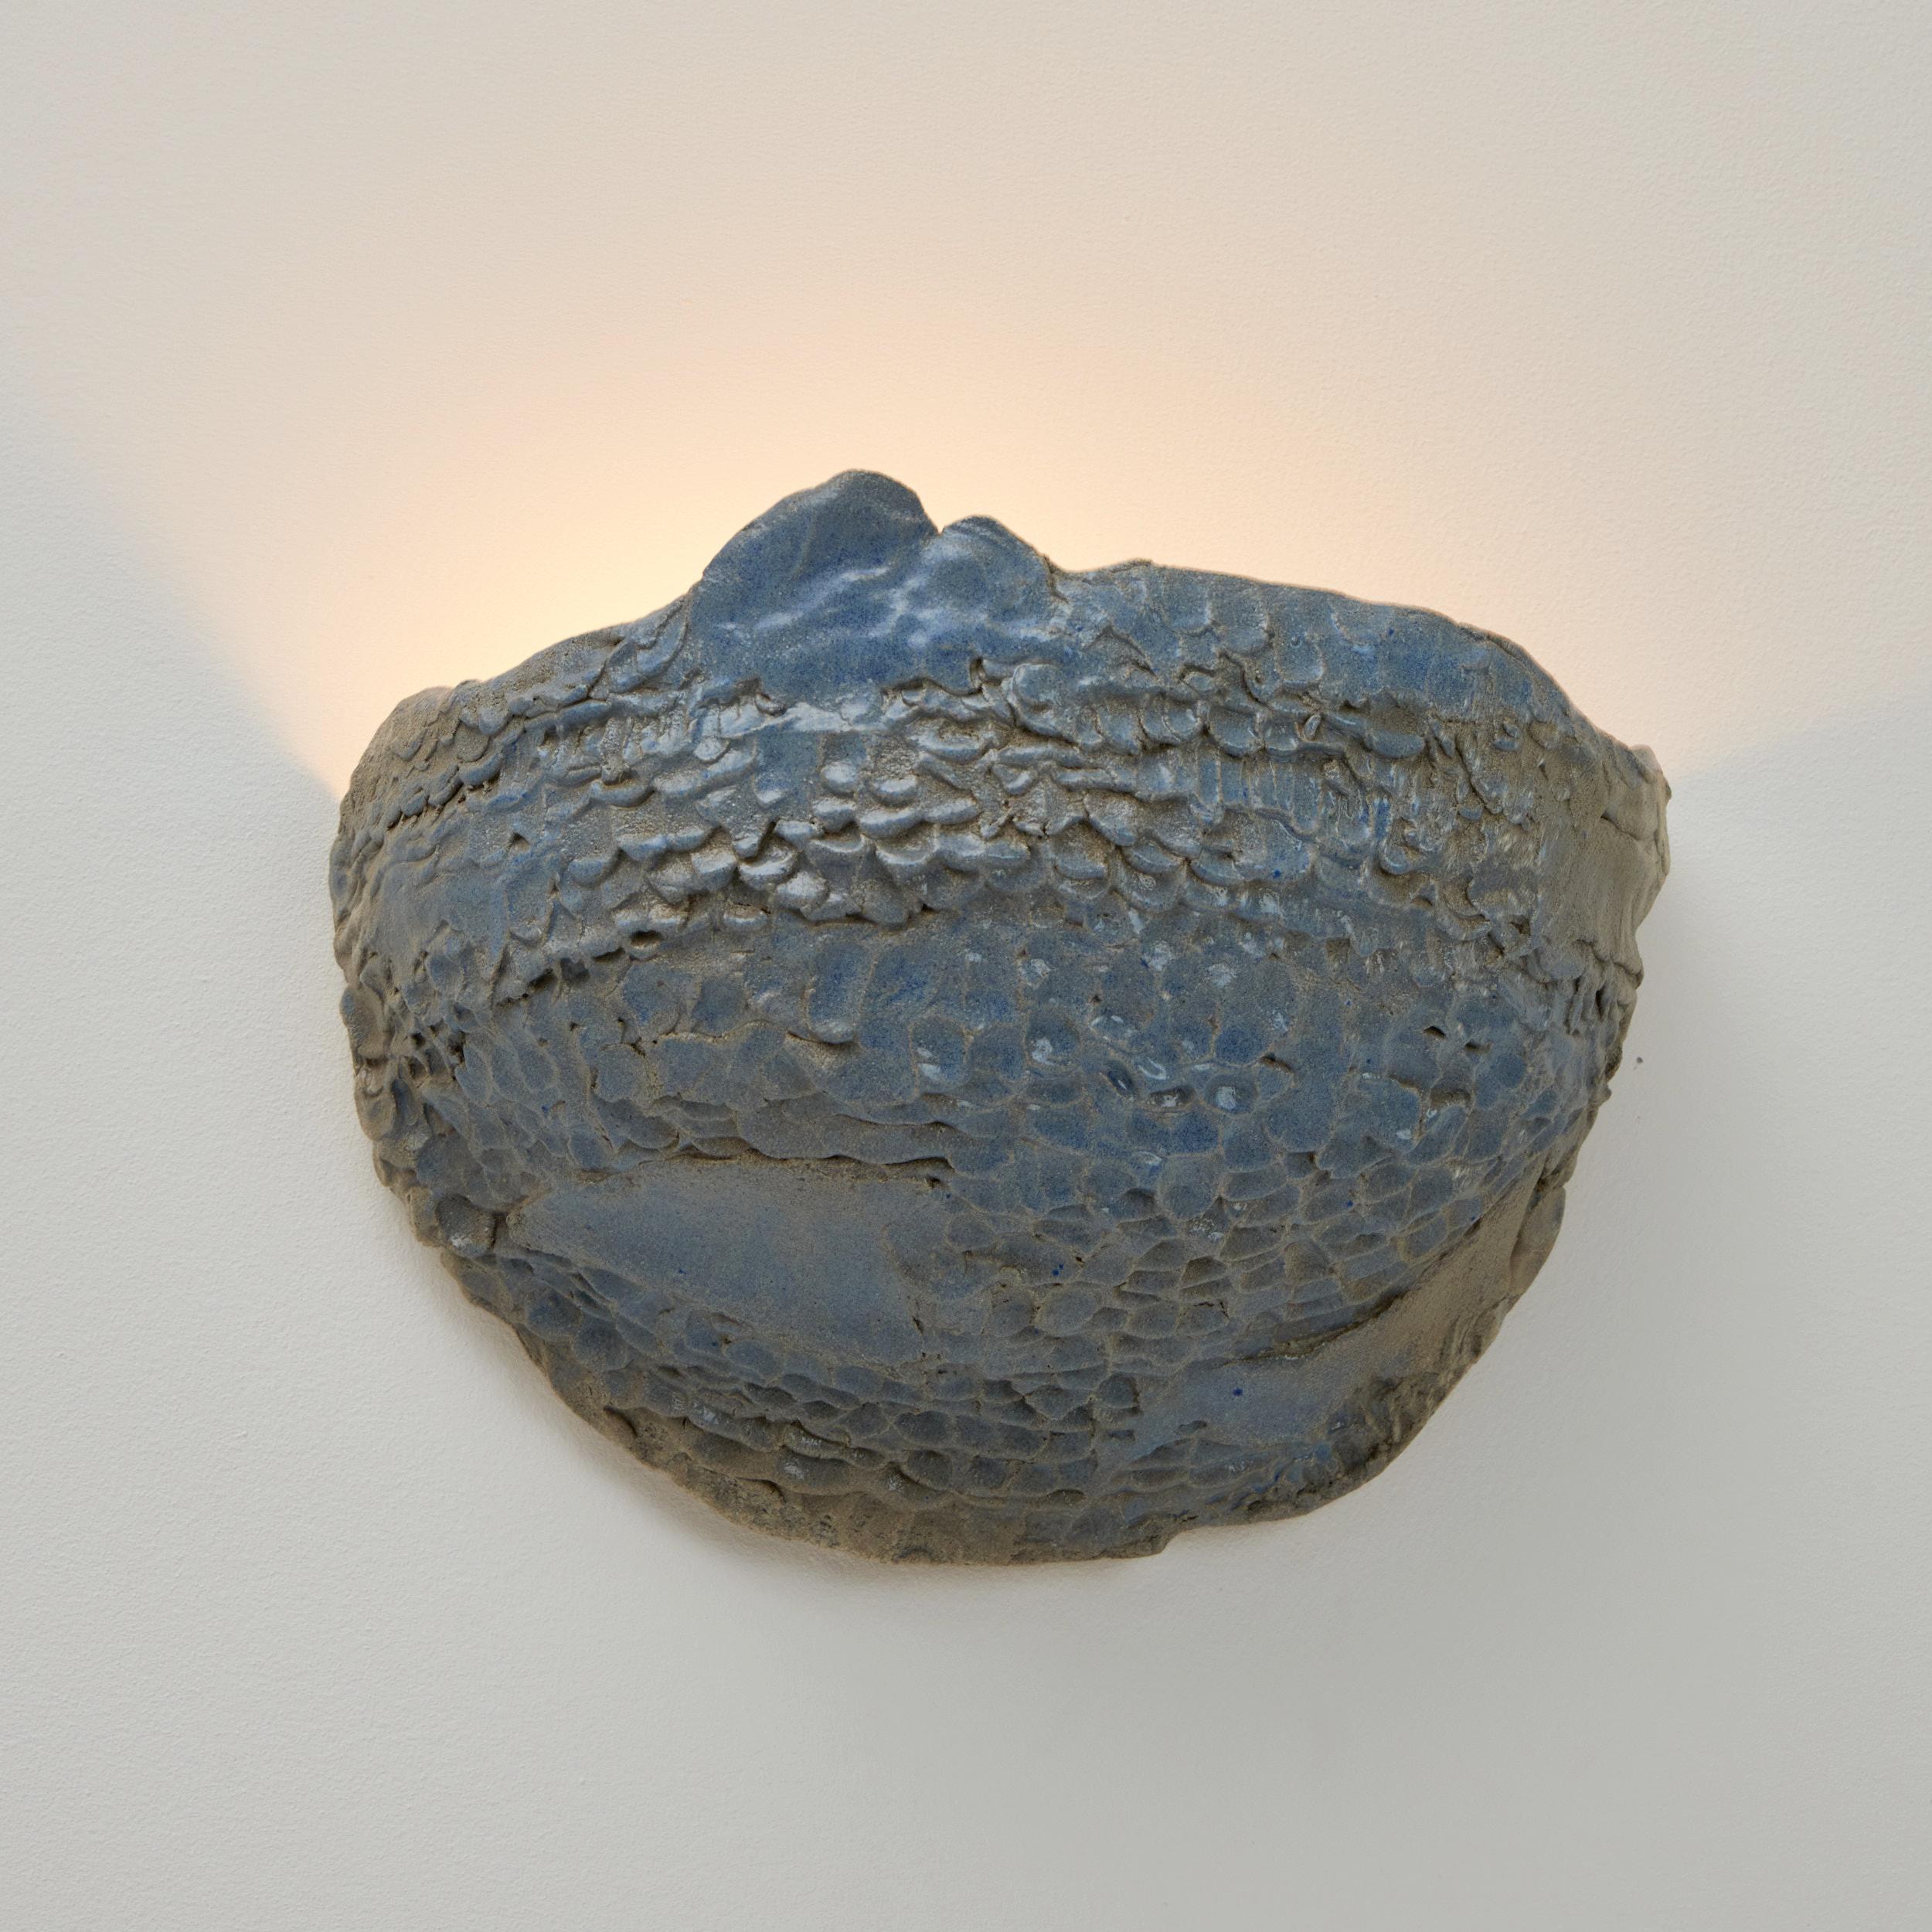 Applique Casa n° 5 en bleu mousse
Conçu par le project 213A en 2023

Lampe artisanale en céramique avec finition texturée, fabriquée dans l'atelier de céramique de Project 213A.
Chaque pièce est unique en raison de sa nature artisanale, les formes